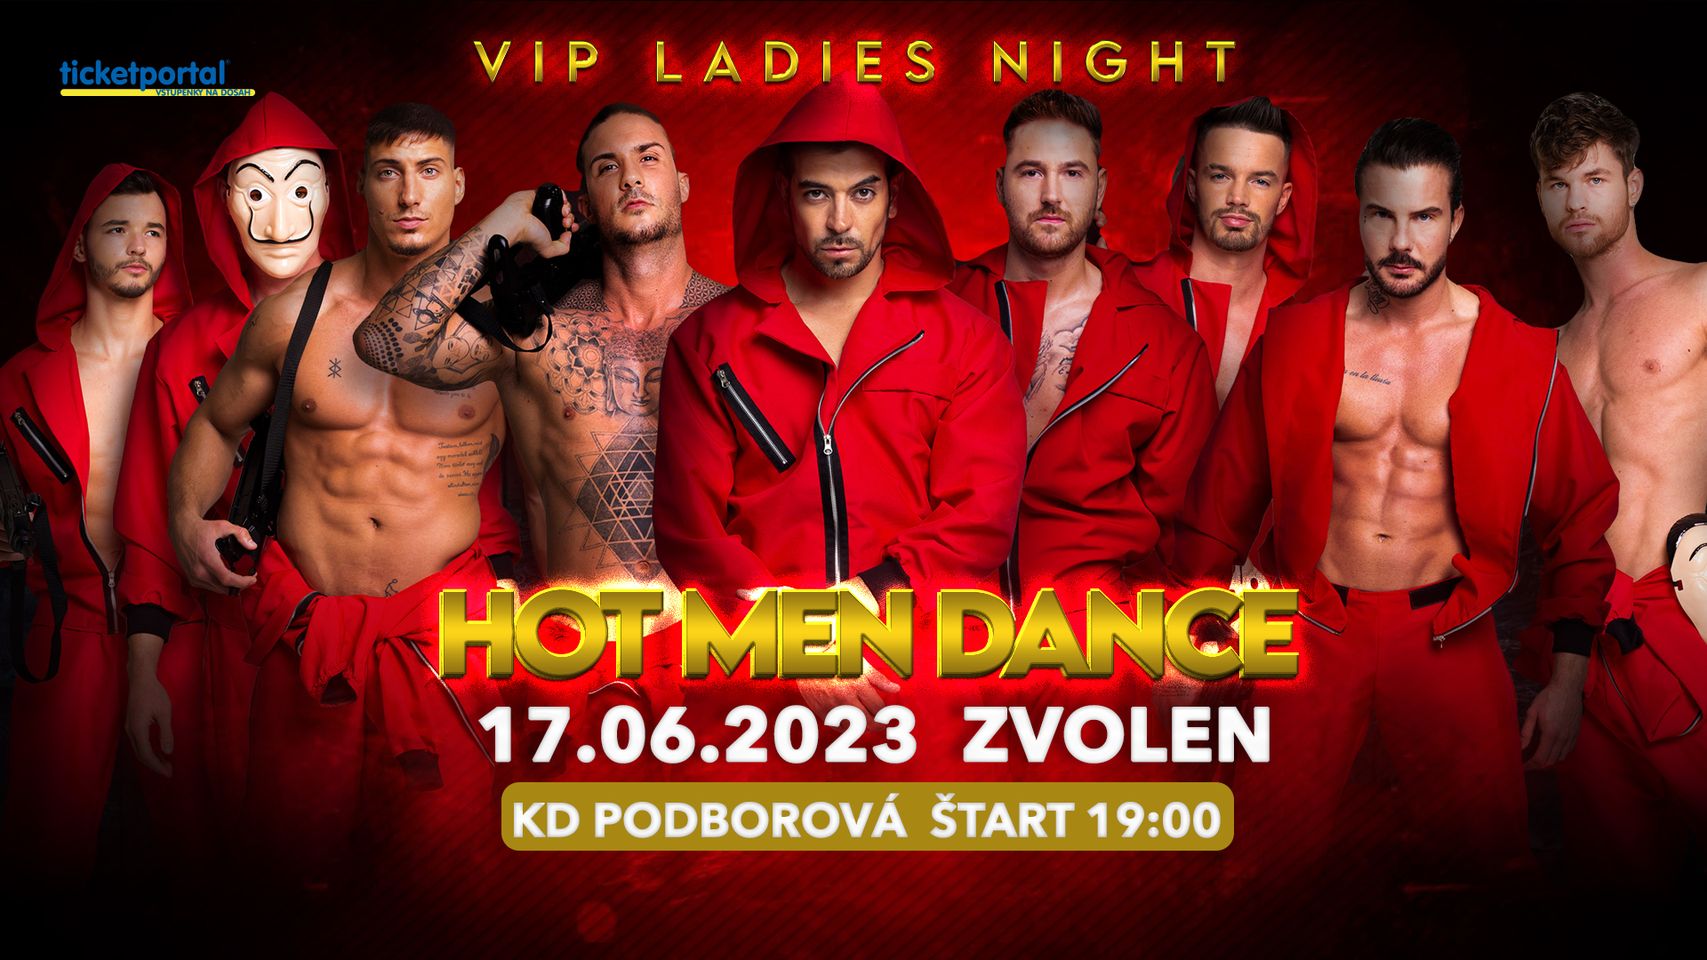 HOT MEN DANCE |  Kulturny Dom Podborová